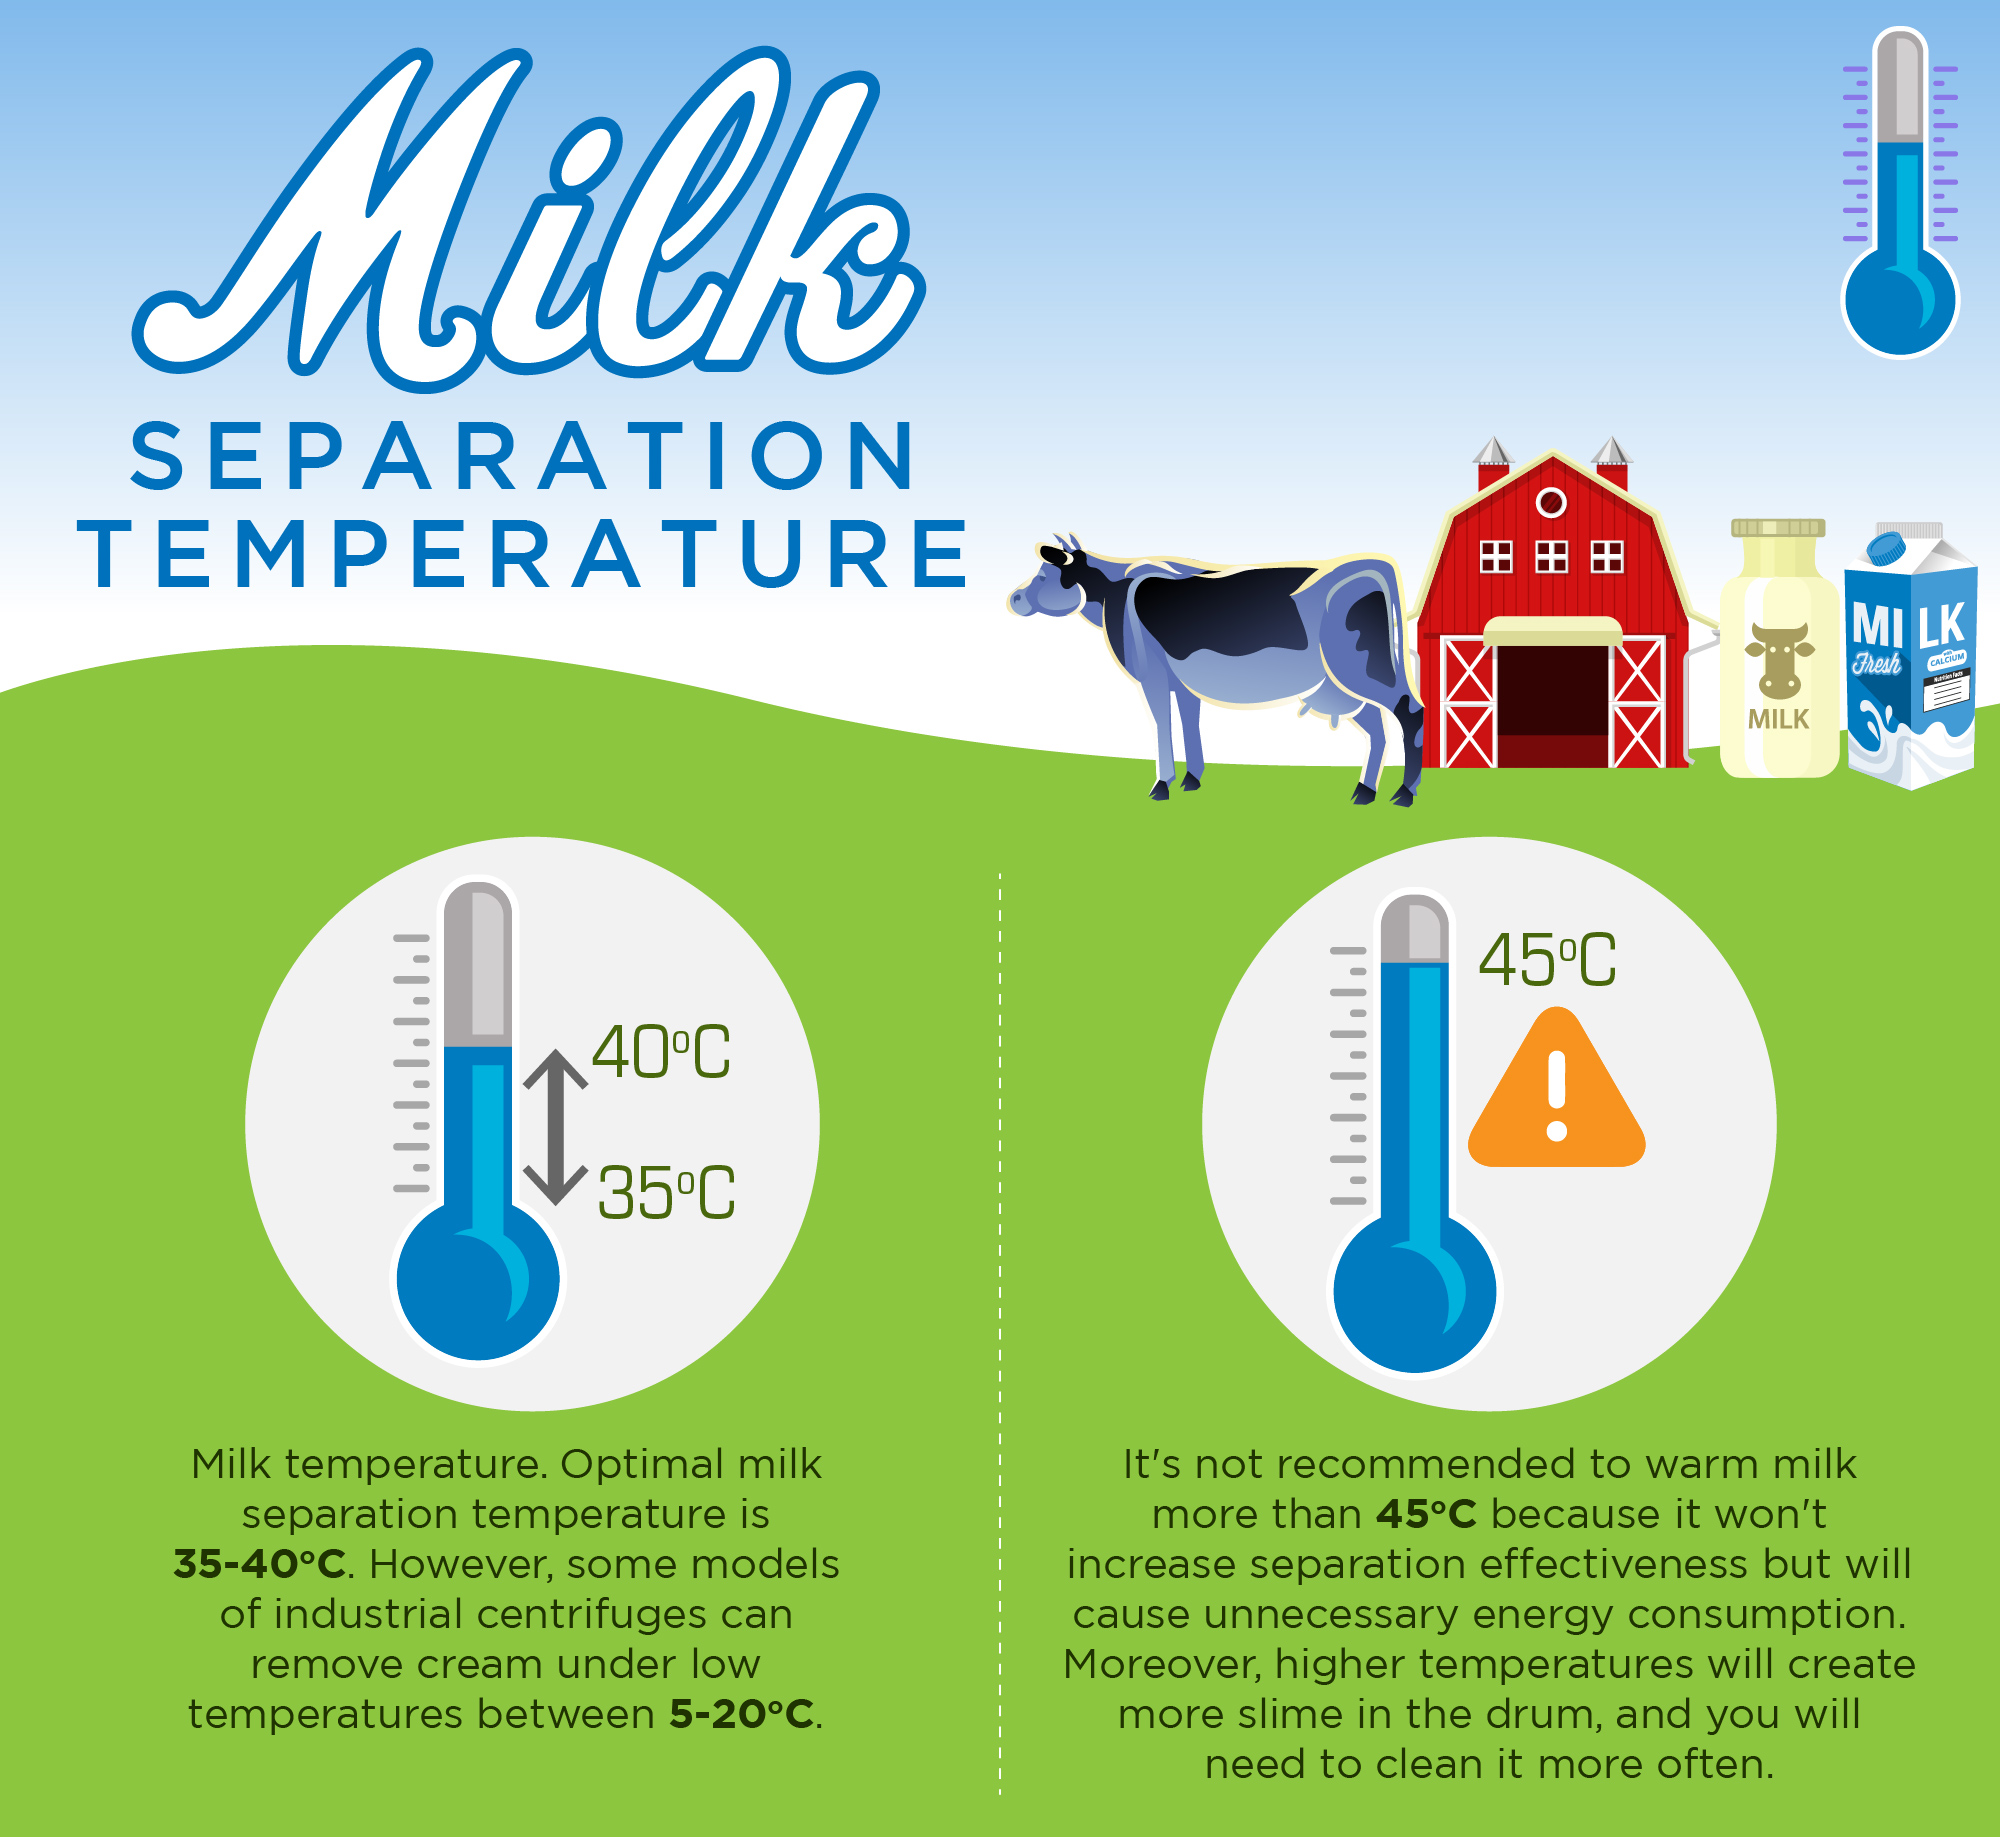 Milk Separation. Температура молока для сепаратора. Milk temperature. Separate Cream from Milk.